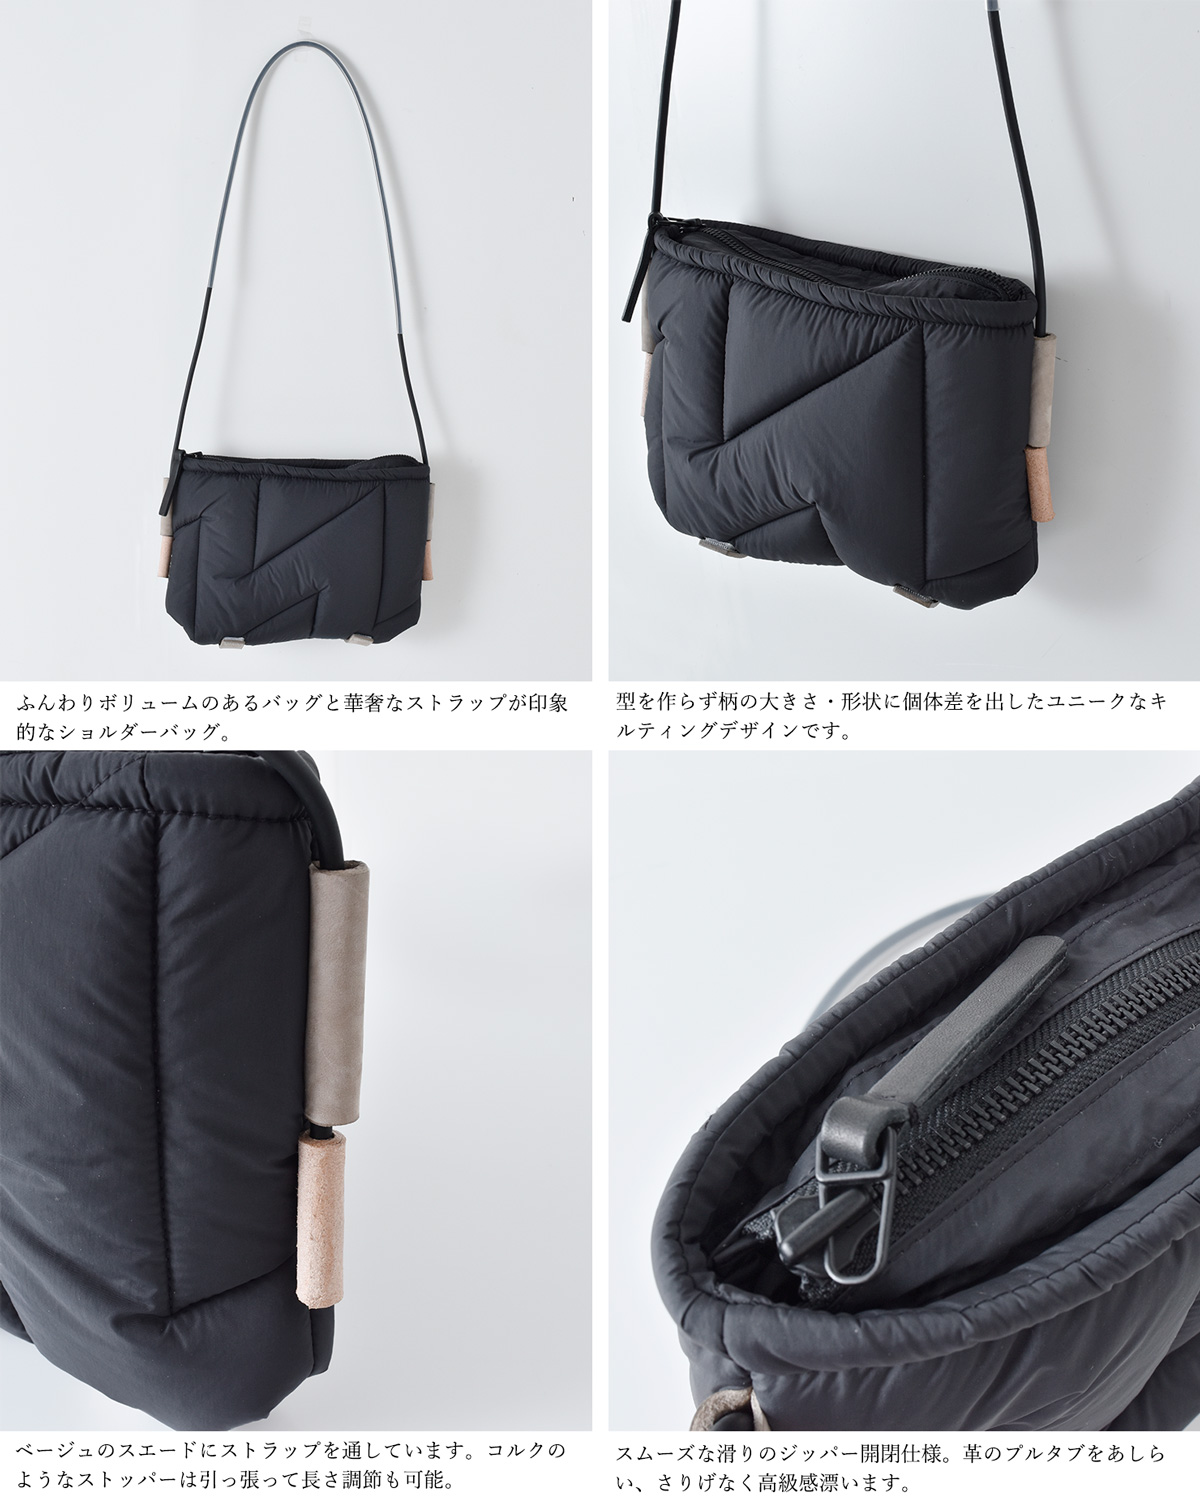 macromauro(マクロマウロ)ハンドキルトショルダーバッグ“SHOULDER BAG 